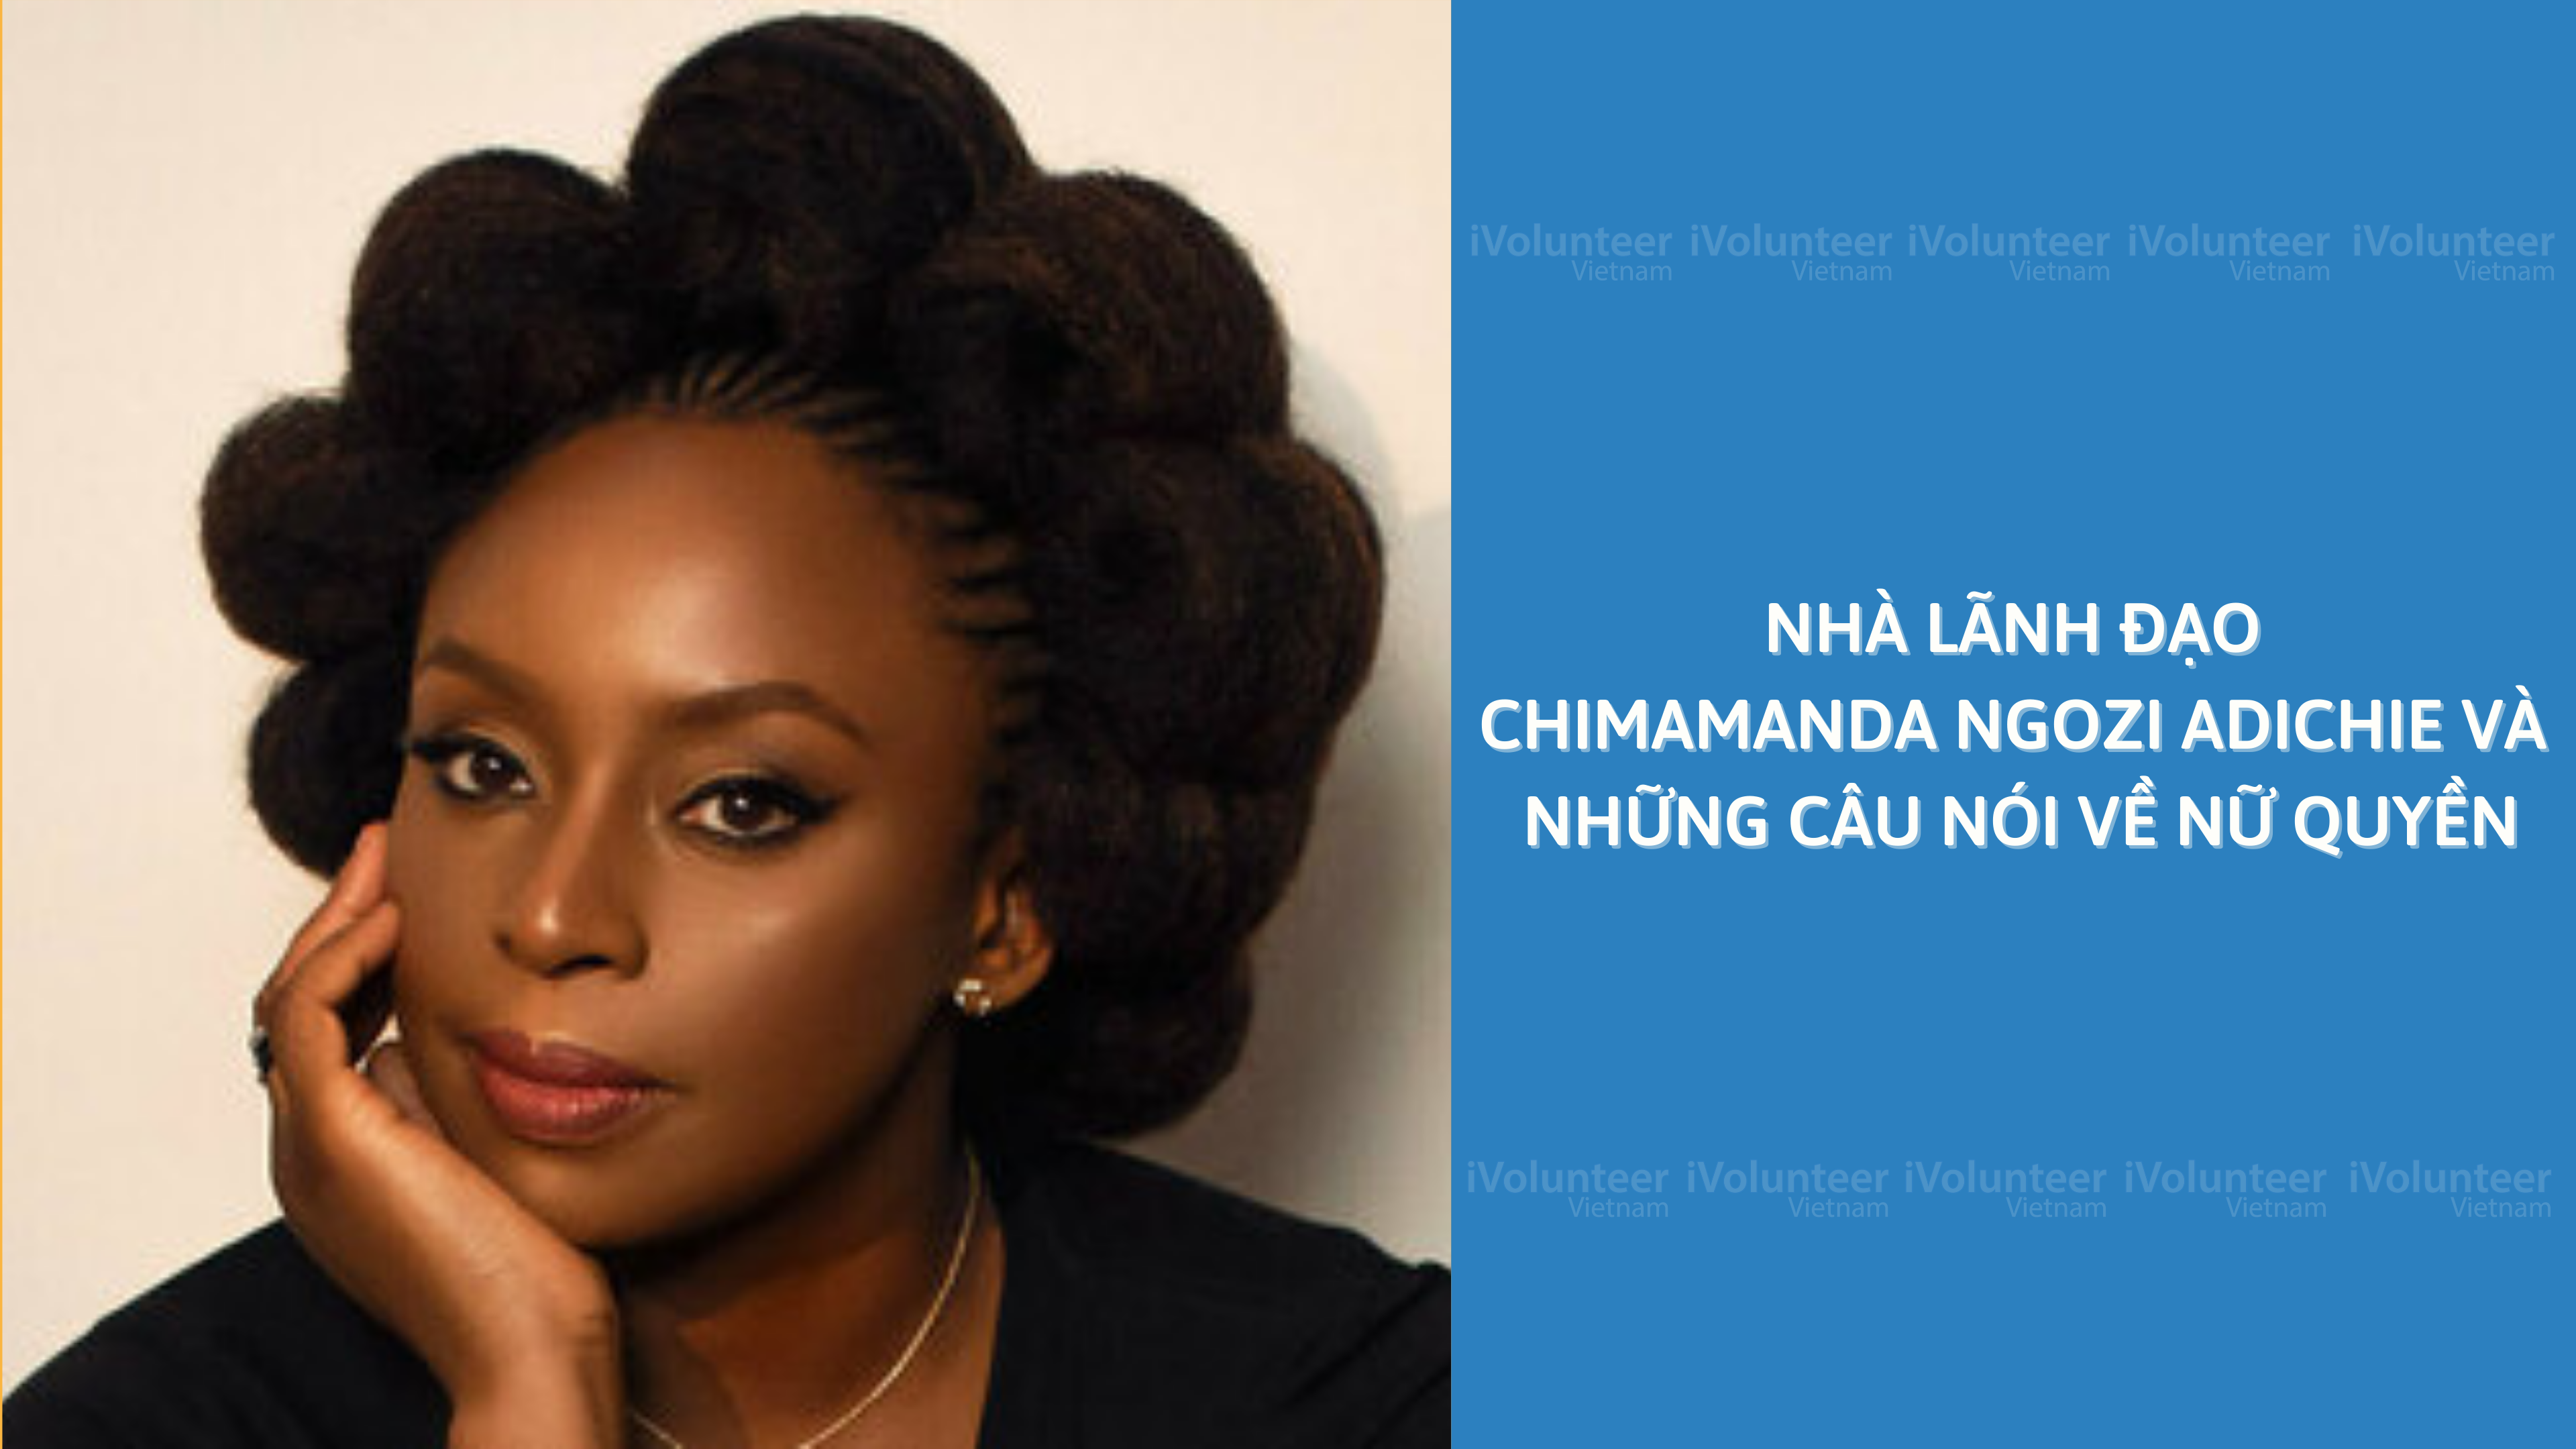 Nhà Lãnh Đạo Chimamanda Ngozi Adichie Và Những Câu Nói Về Nữ Quyền